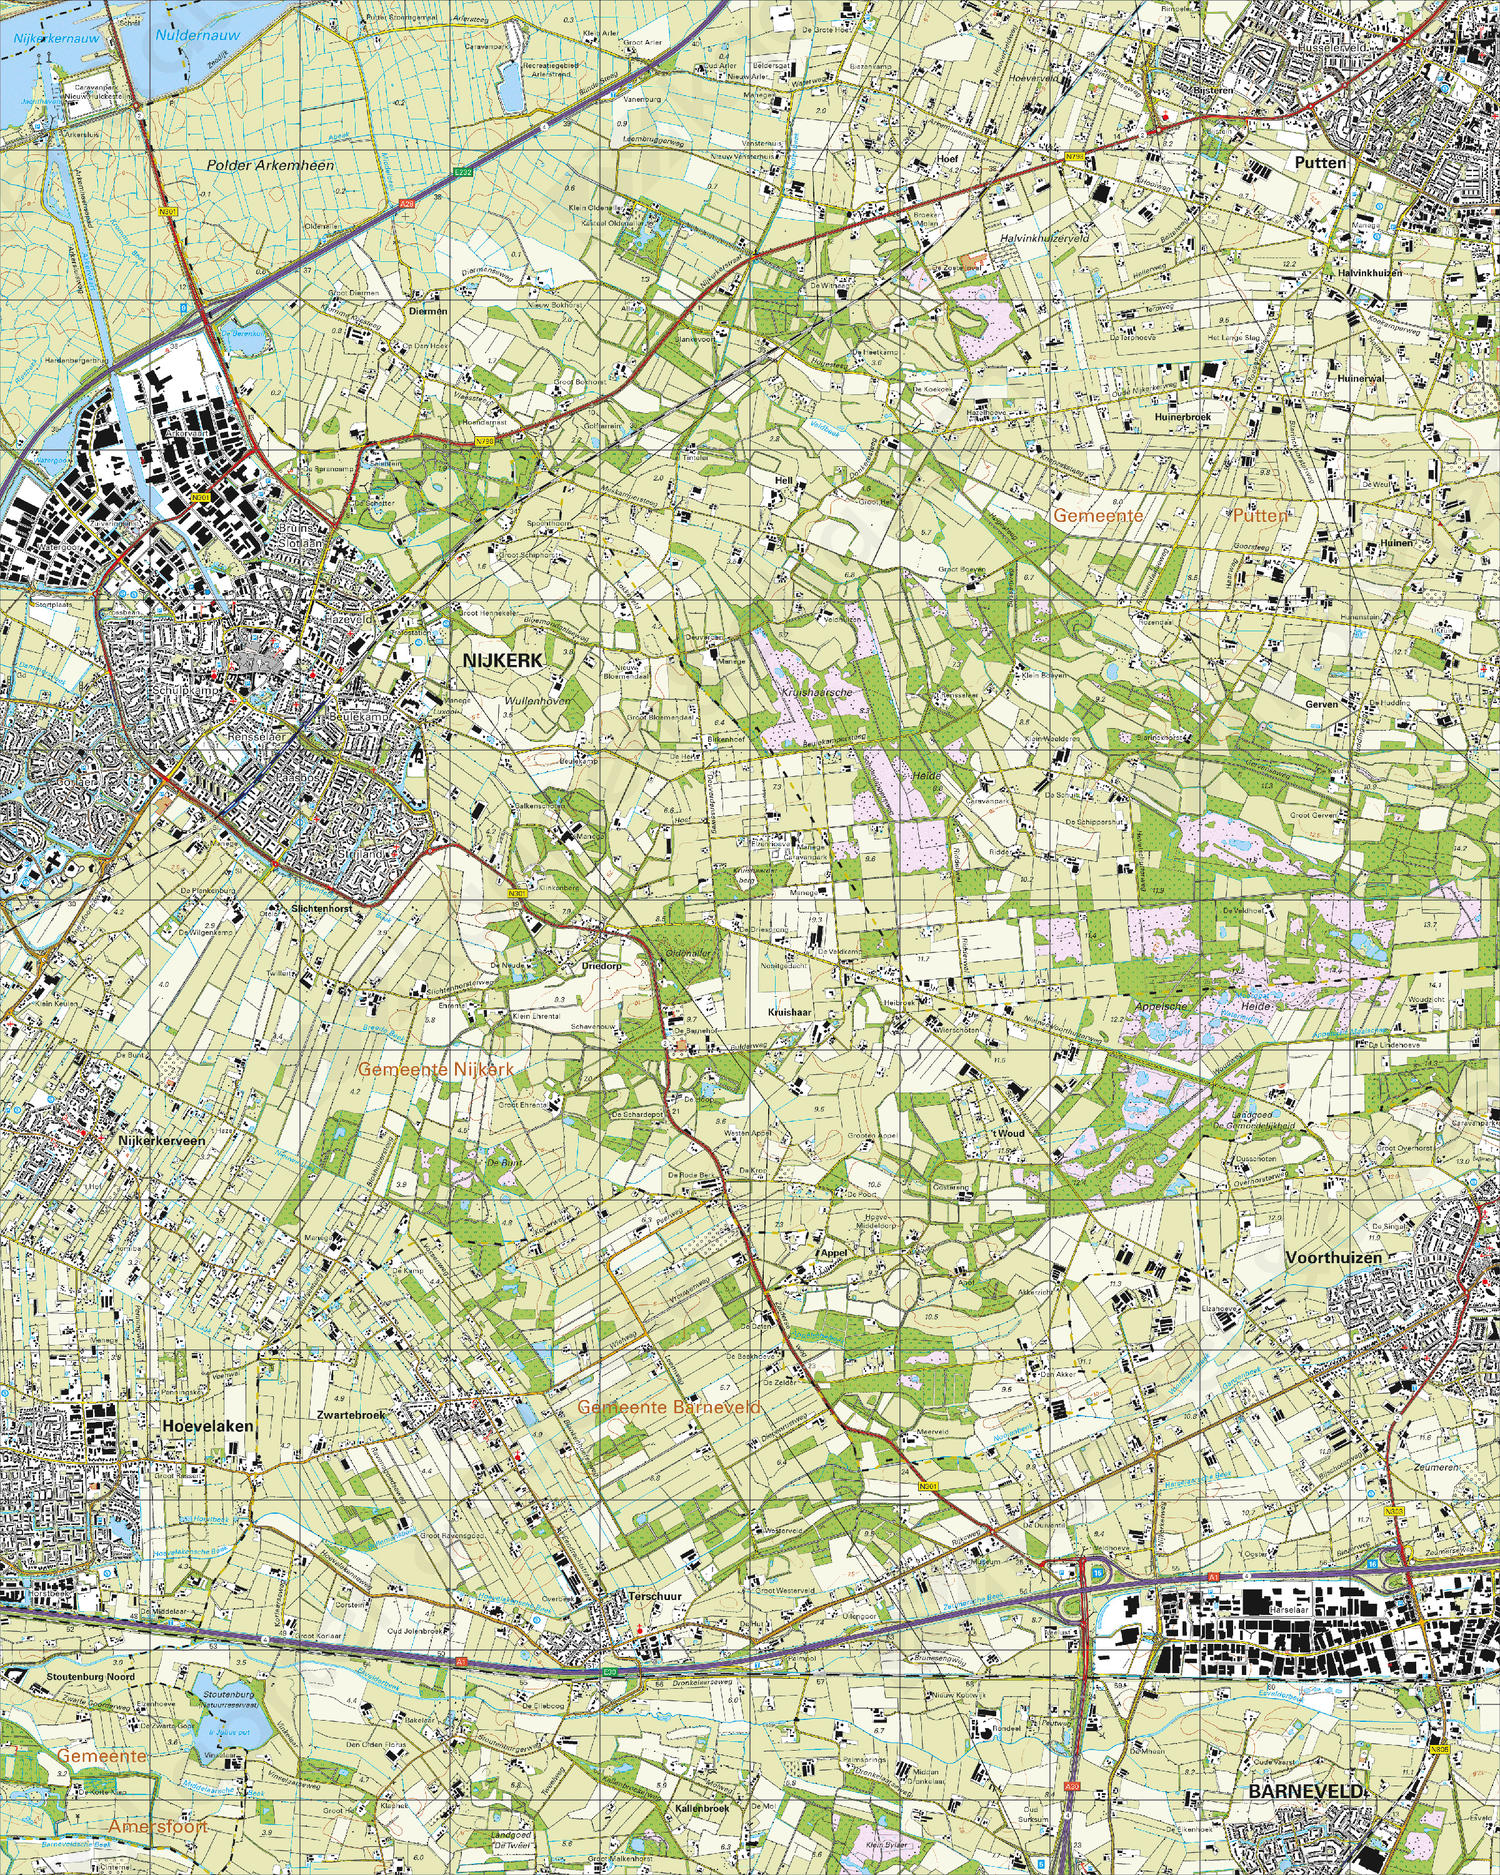 Digitale Topografische Kaart 32E Nijkerk